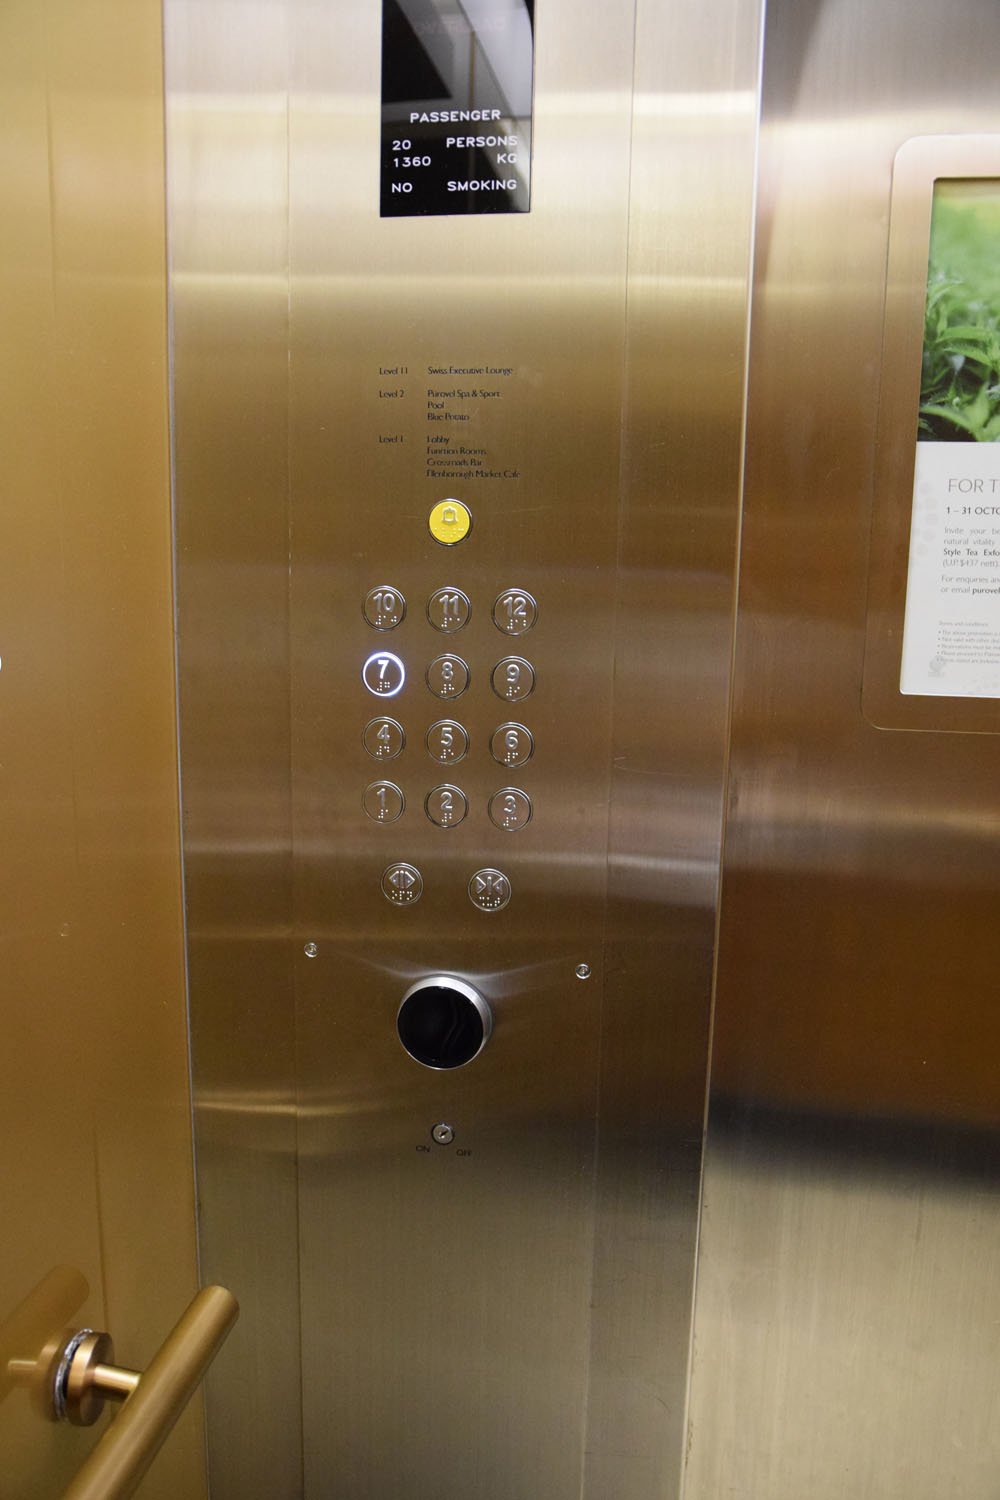 スイソテルマーチャントコートホテルは、立派な5つ星ホテルです！なので、エレベータでは、↑写真にある各階ボタンの下にある黒いセンサーにカードキーを当てないと自分のいる階にいけないのでご注意下さい！